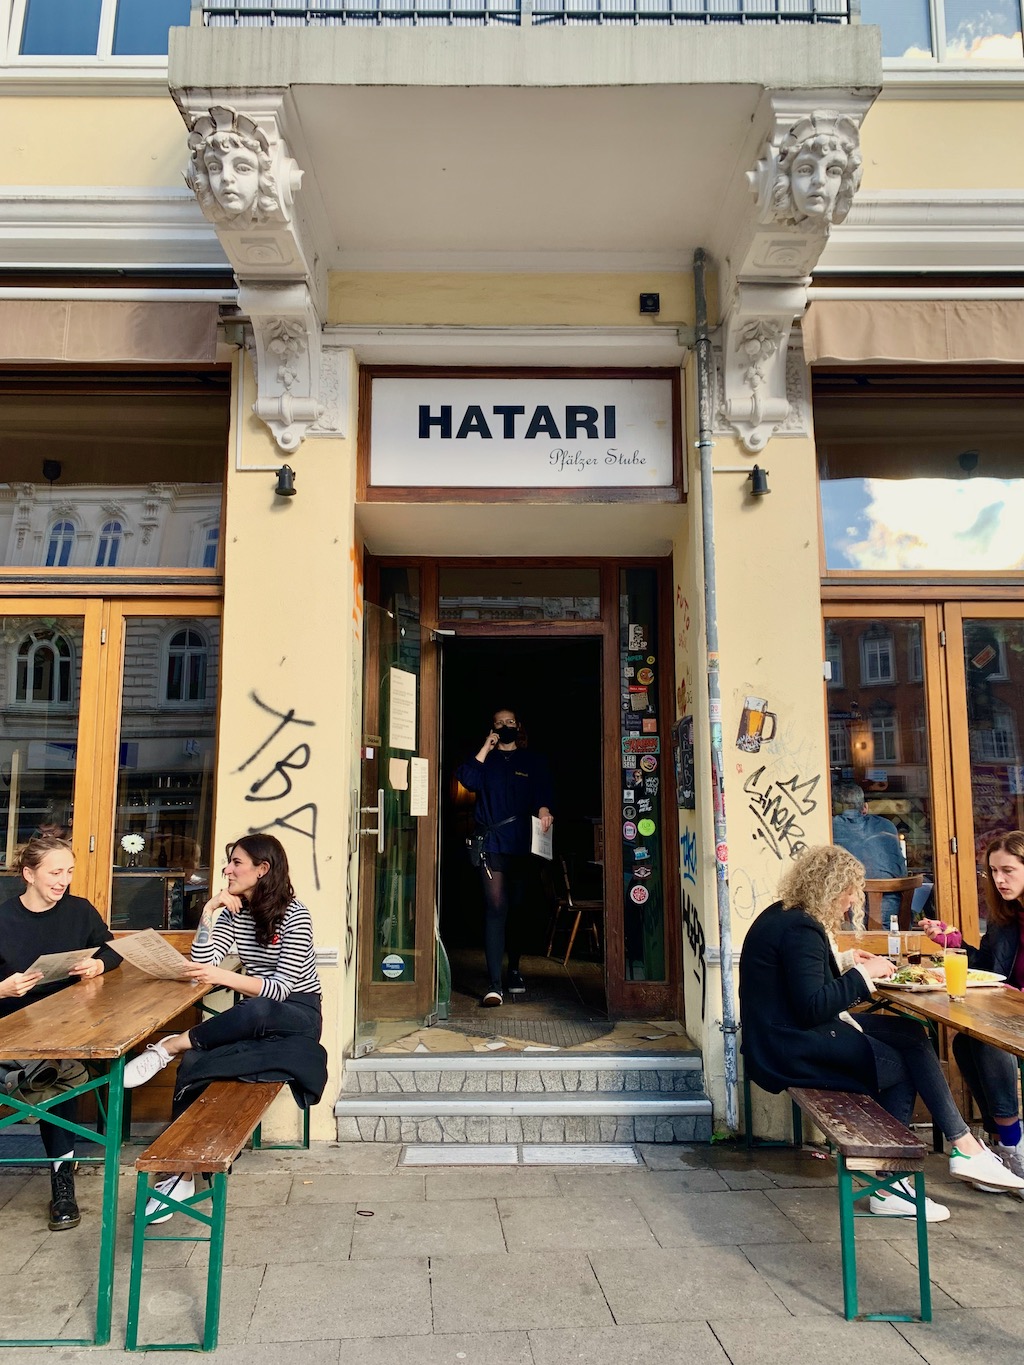 Hatari Pfälzer Stube Hamburg Germany